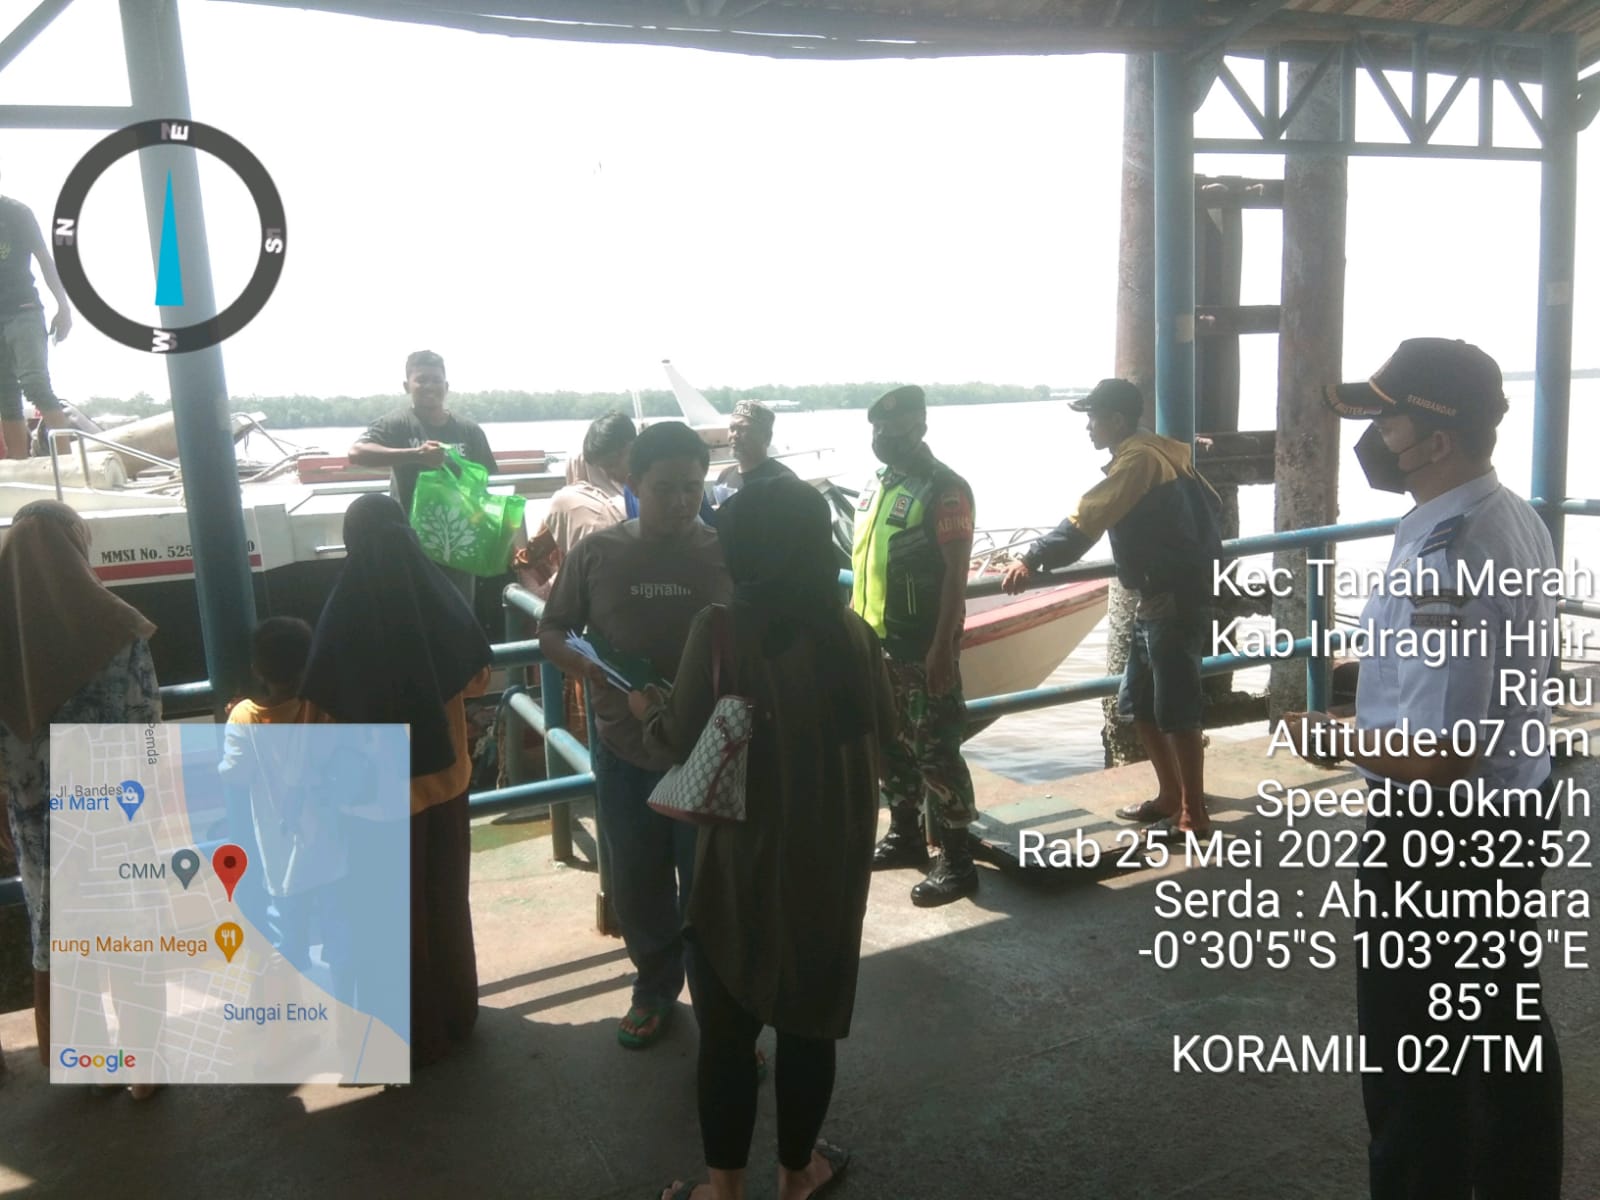 Melaksanakan Prokes Pelabuhan Tanah Merah diCek Koramil 02/TM